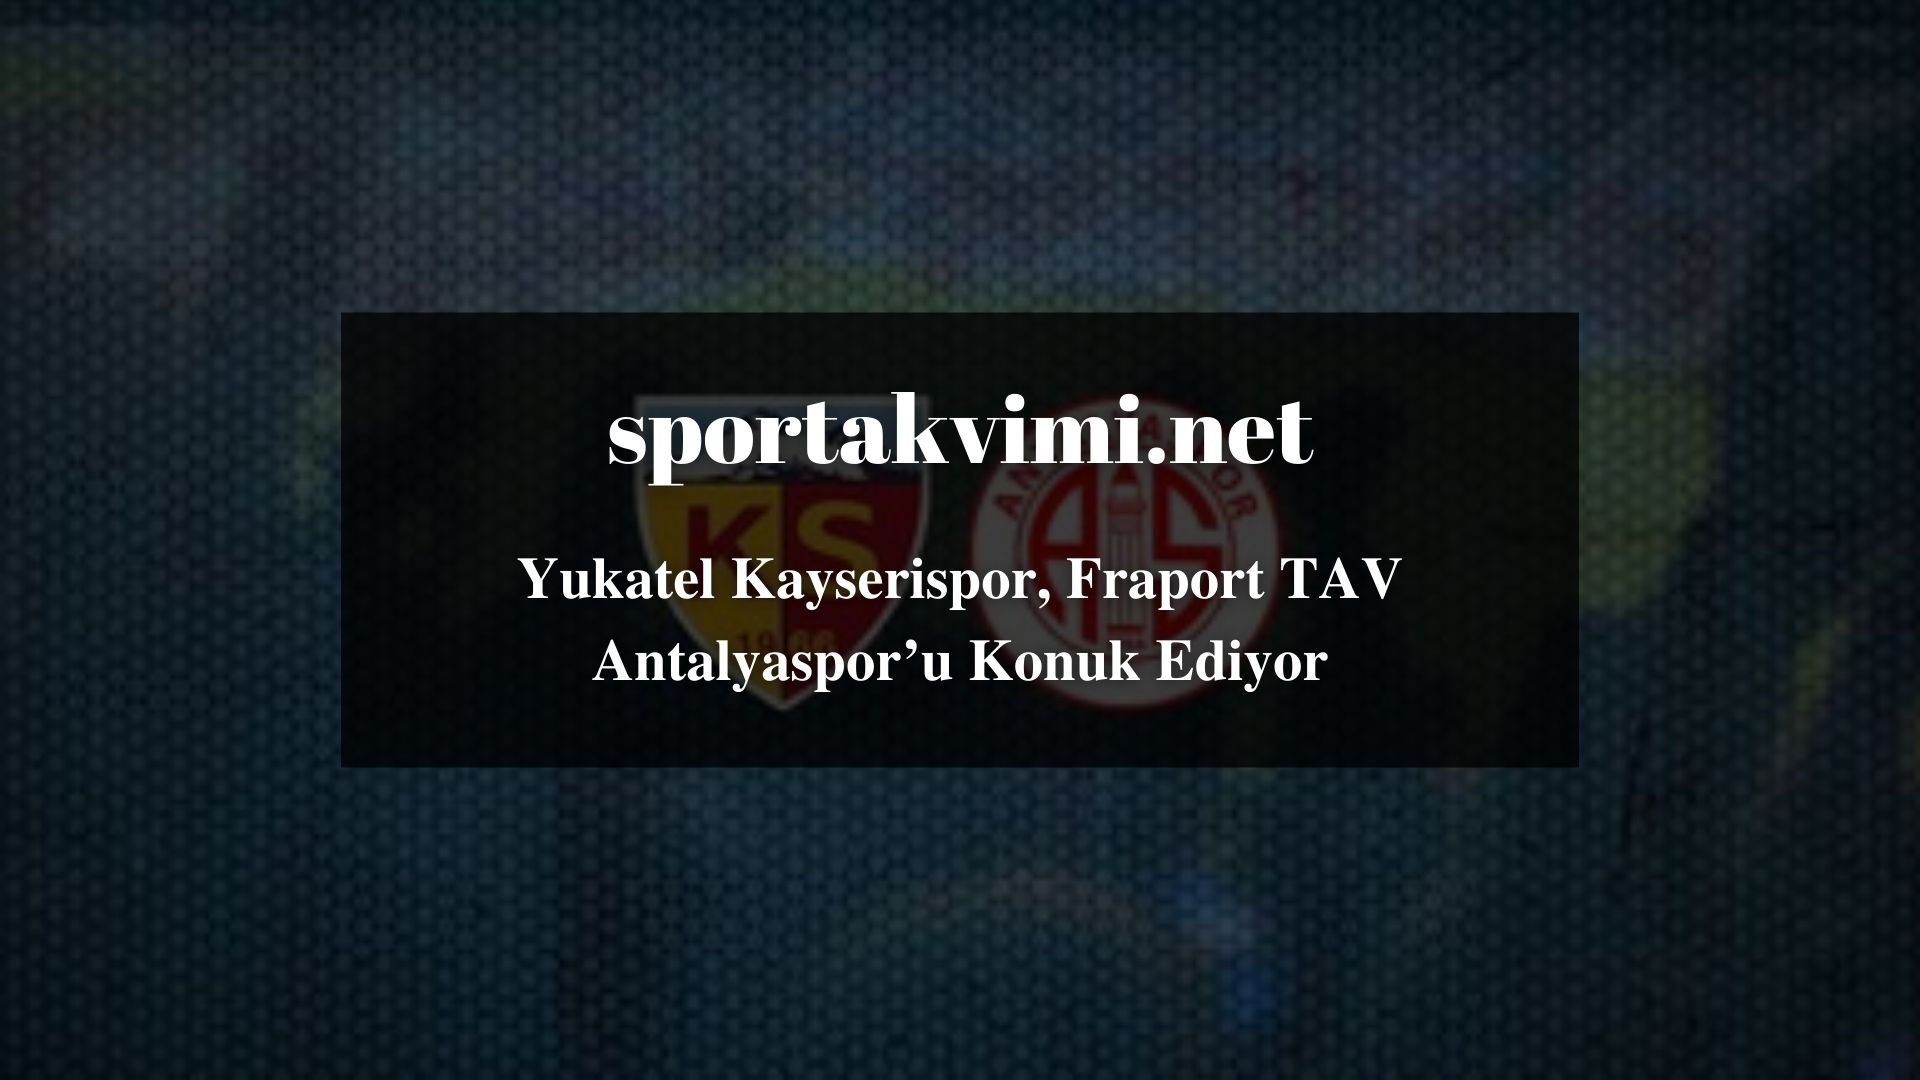 Yukatel Kayserispor, Fraport TAV Antalyaspor’u Konuk Ediyor